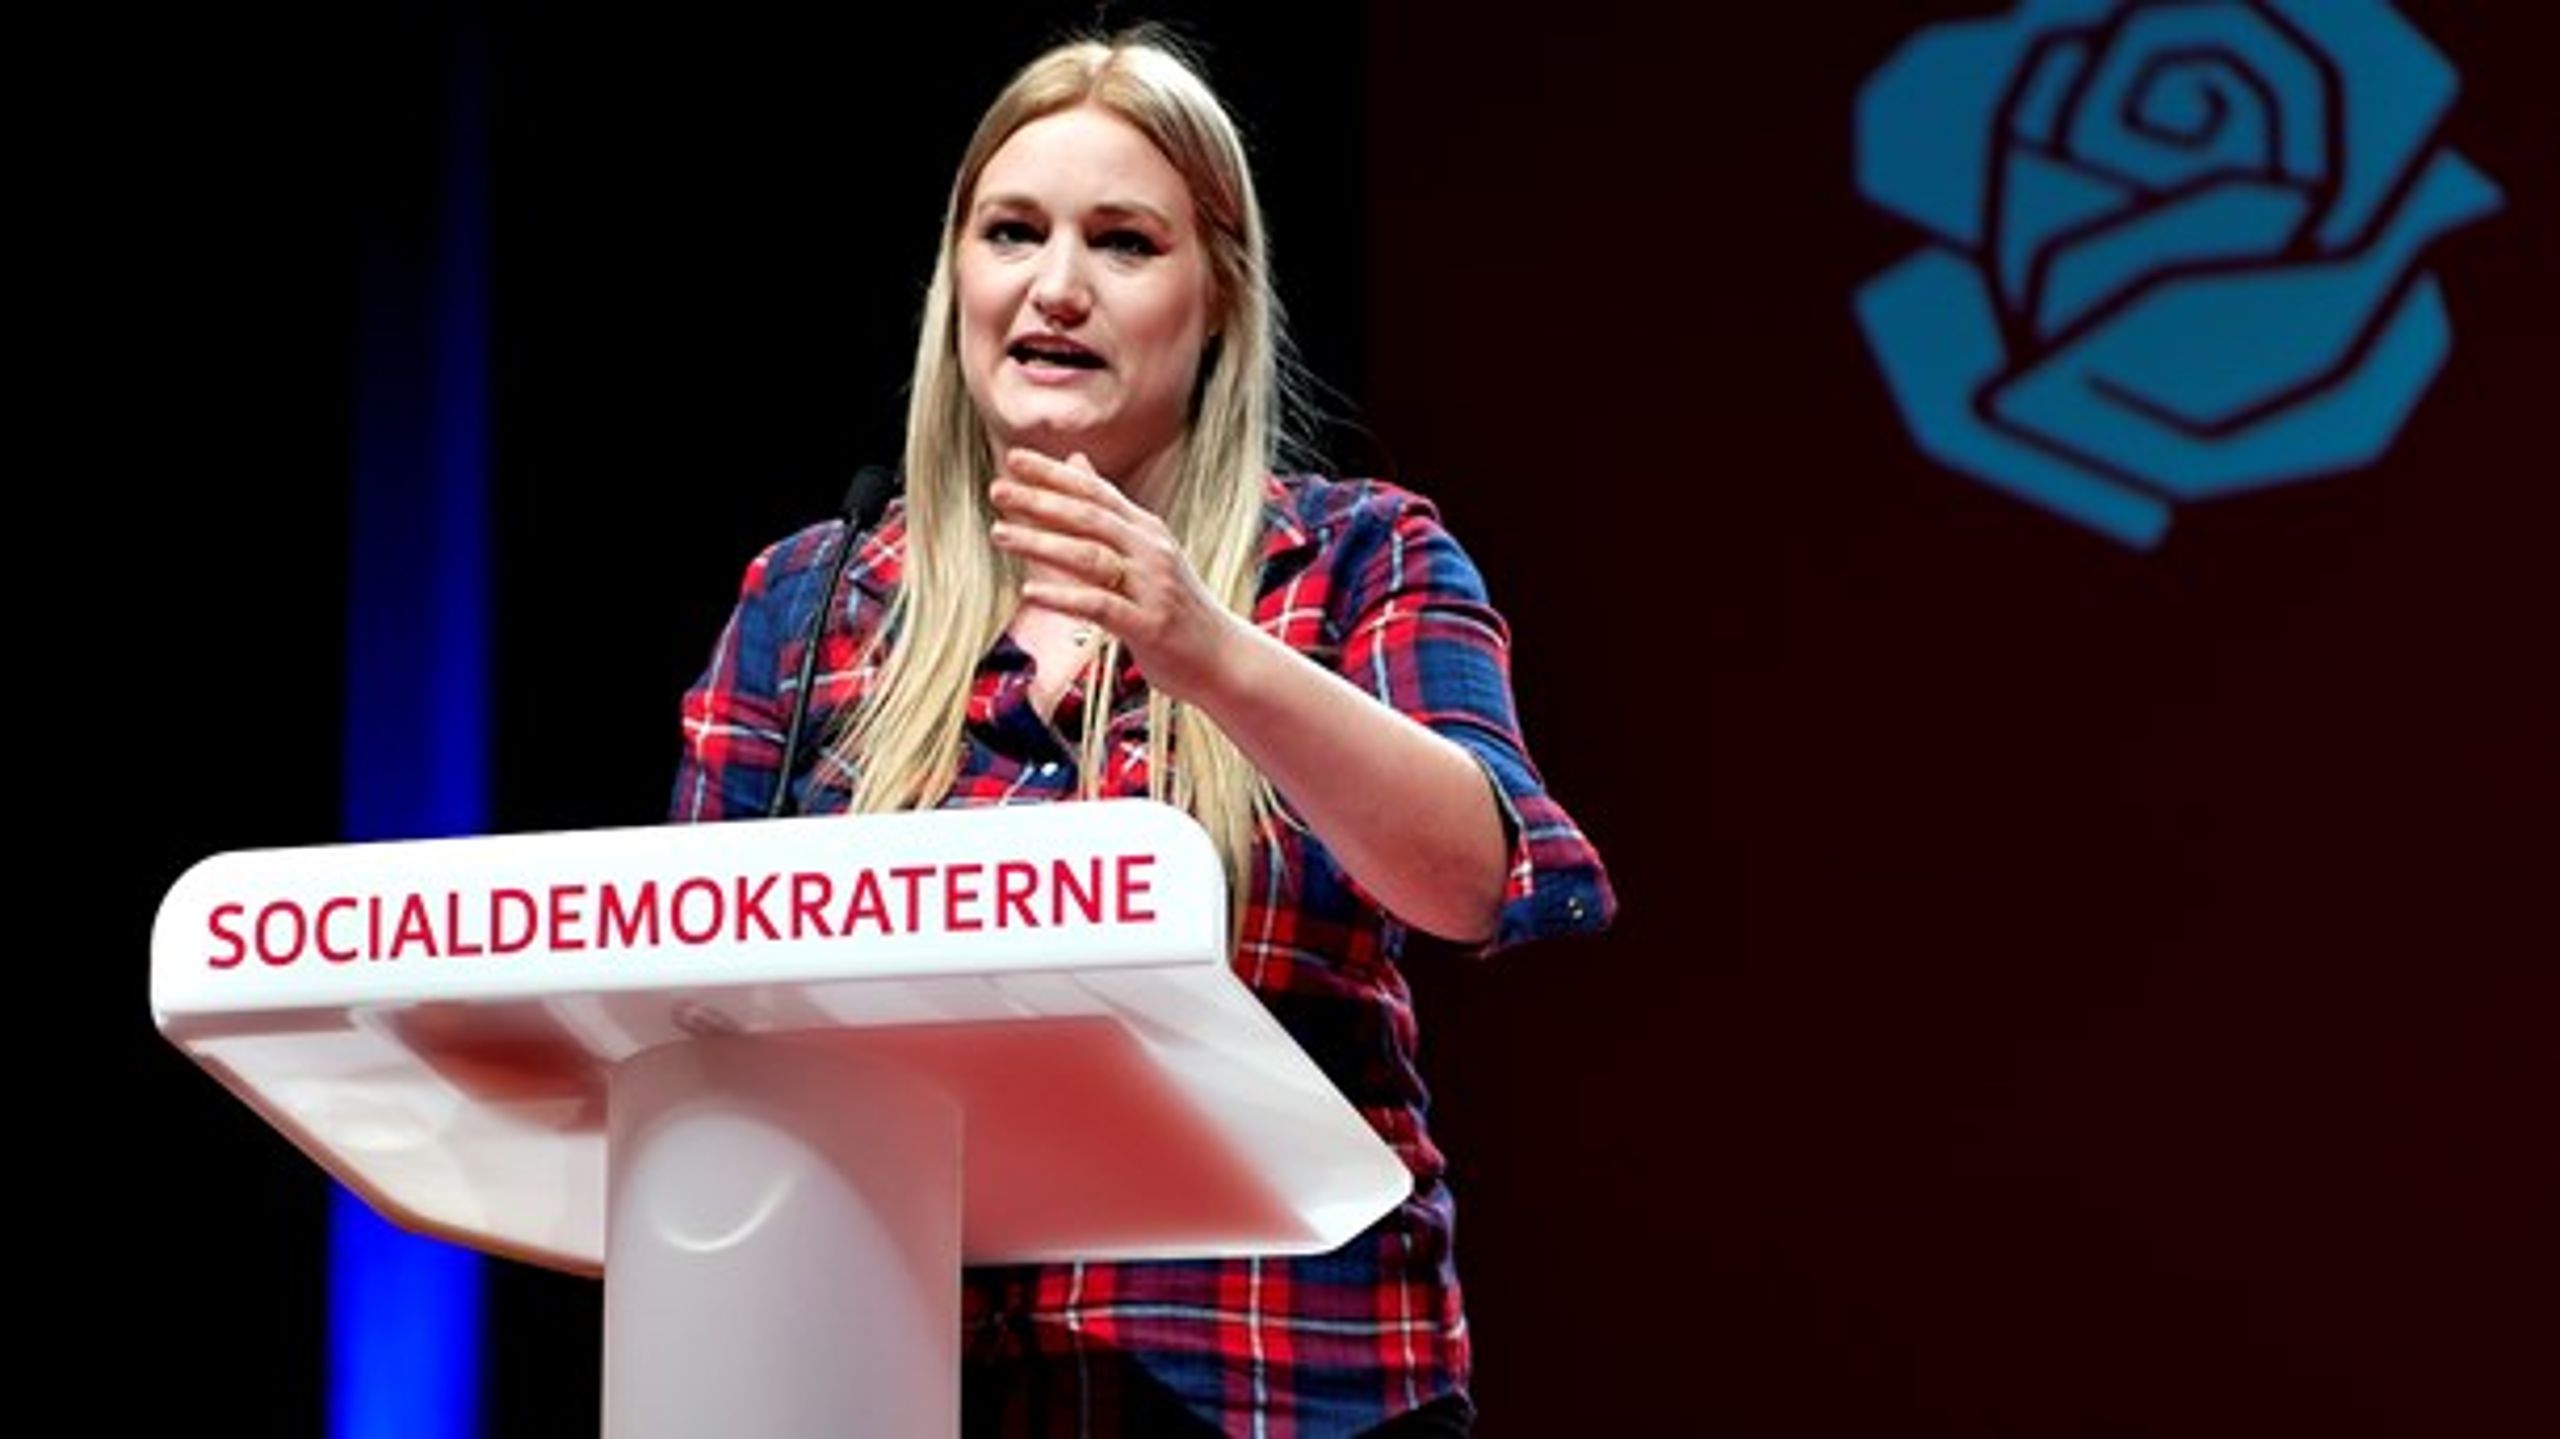 Den tidligere socialdemokrat&nbsp;Camilla Schwalbe har lanceret et socialøkonomisk kommunikationsbureau.